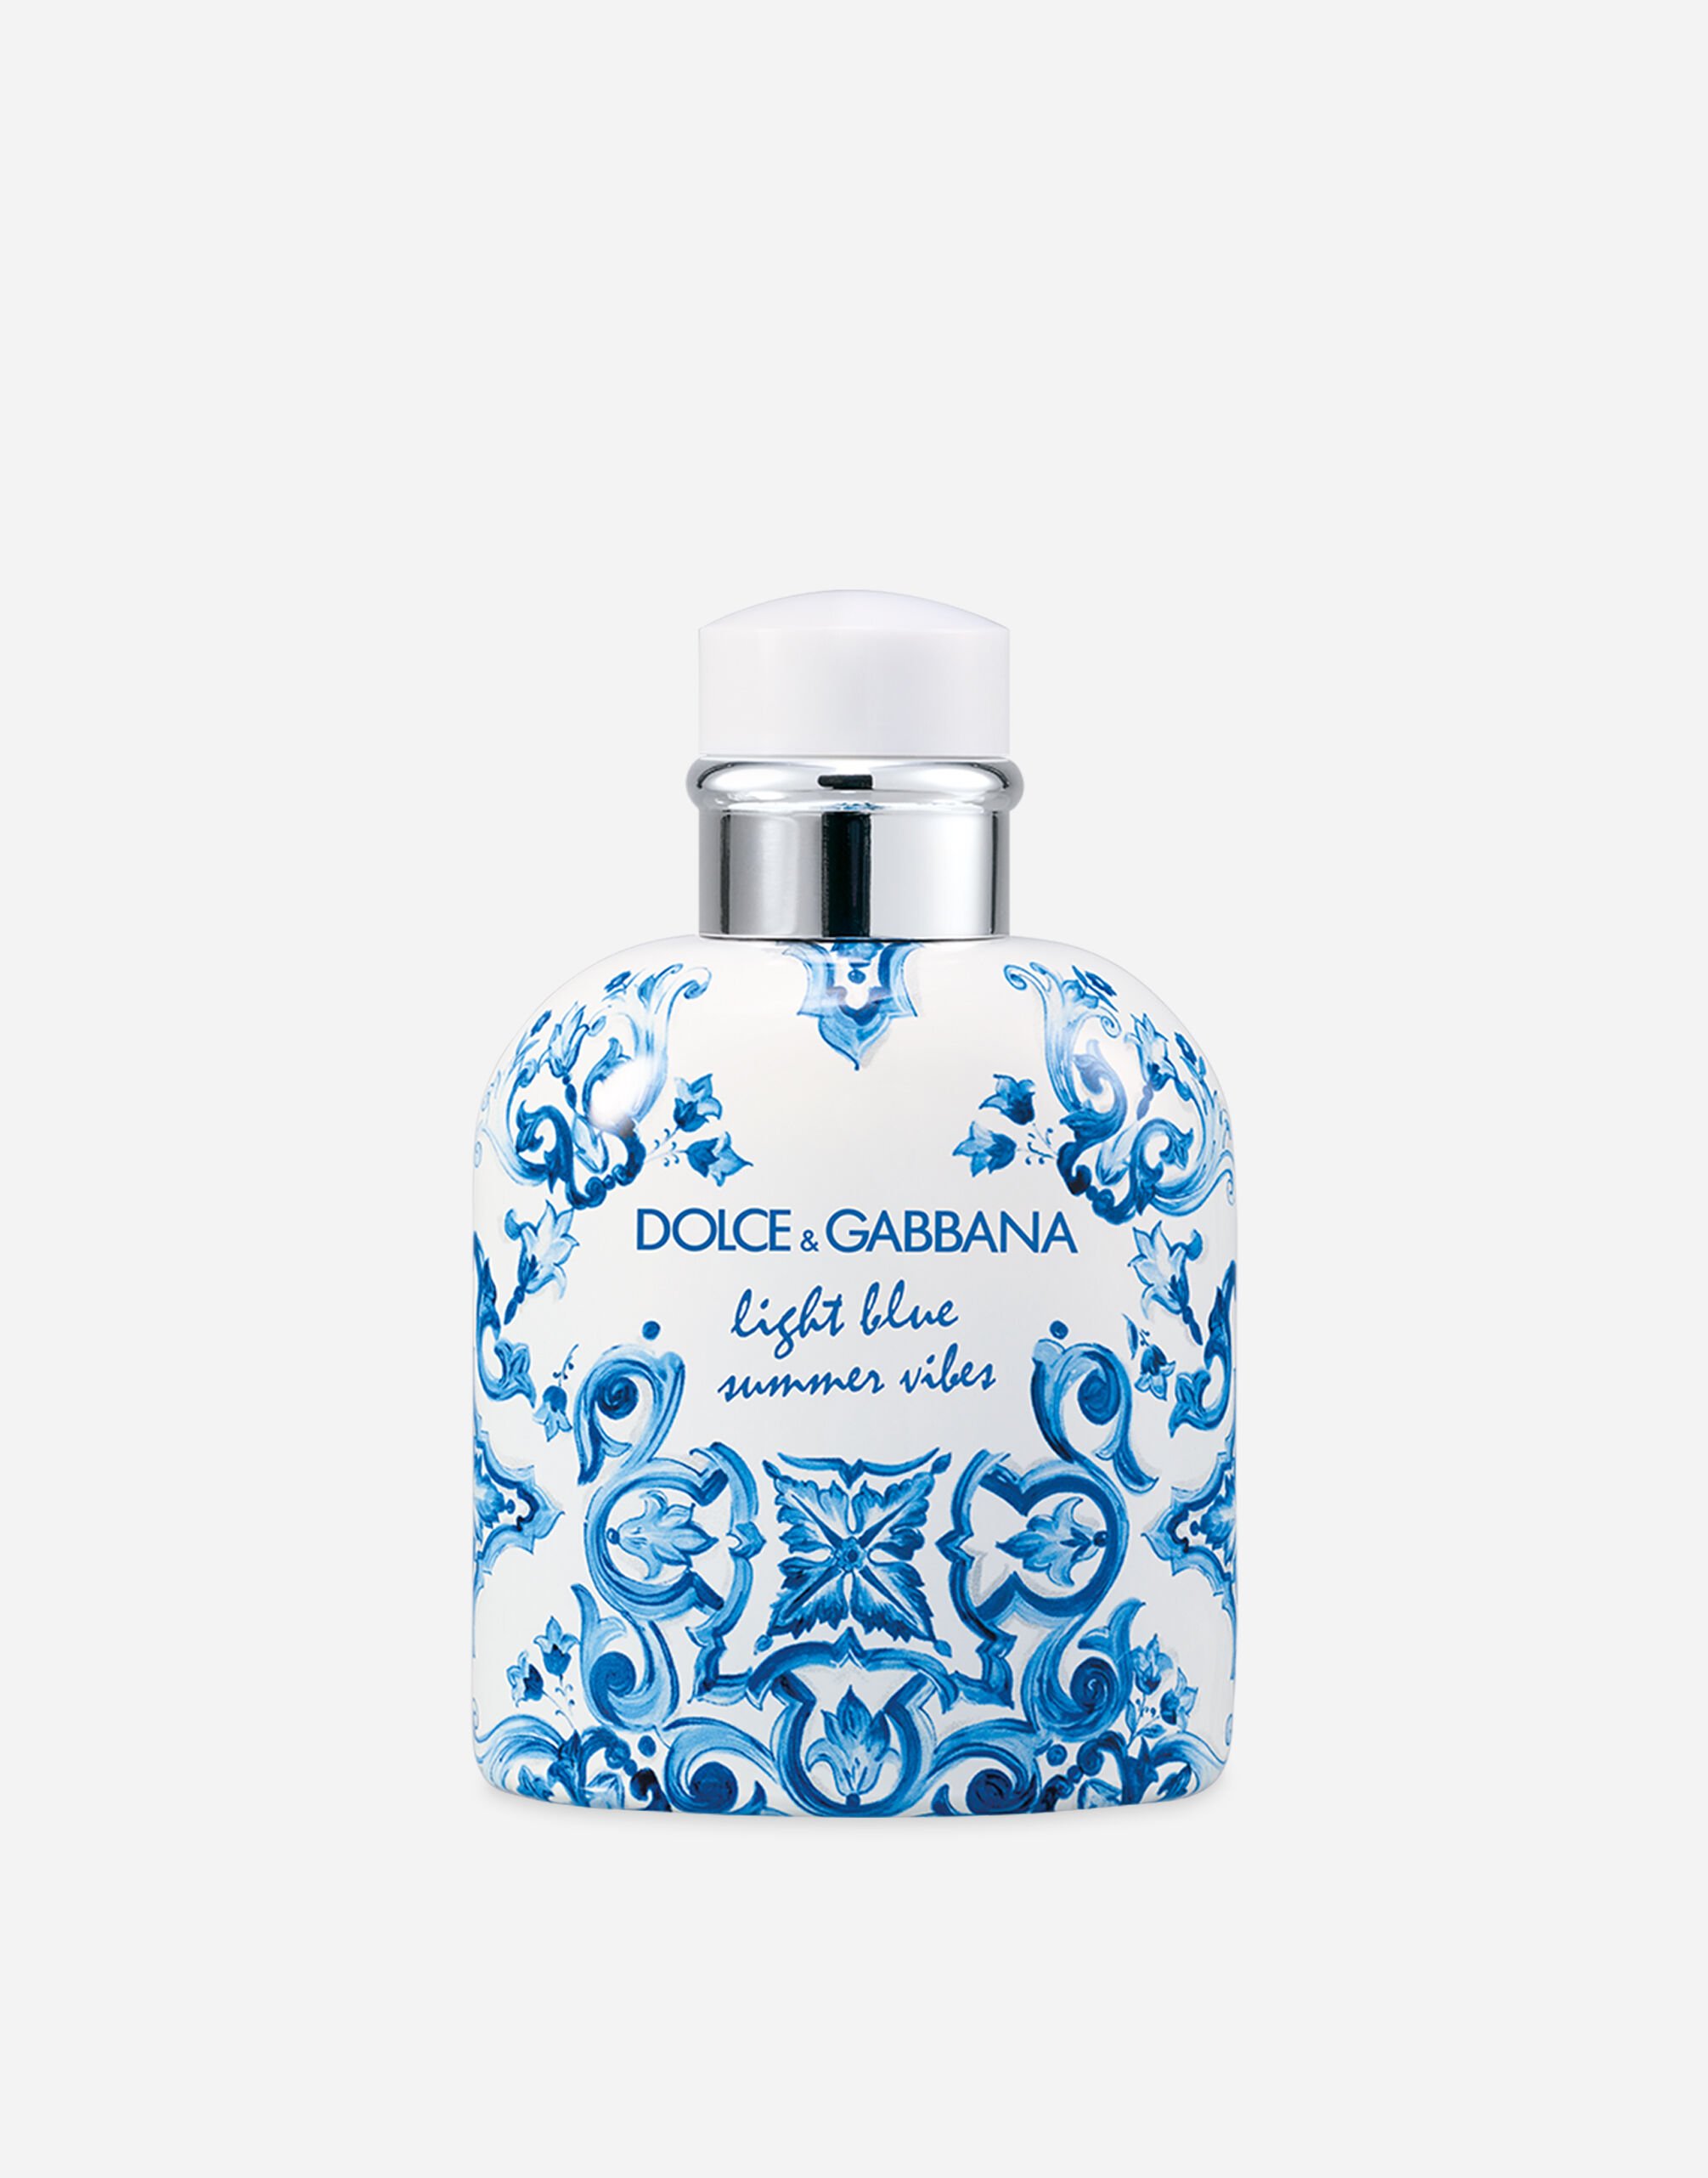 Dolce & Gabbana Light Blue Summer Vibes Pour Homme Eau de Toilette 1N Light MKUPFCE0018